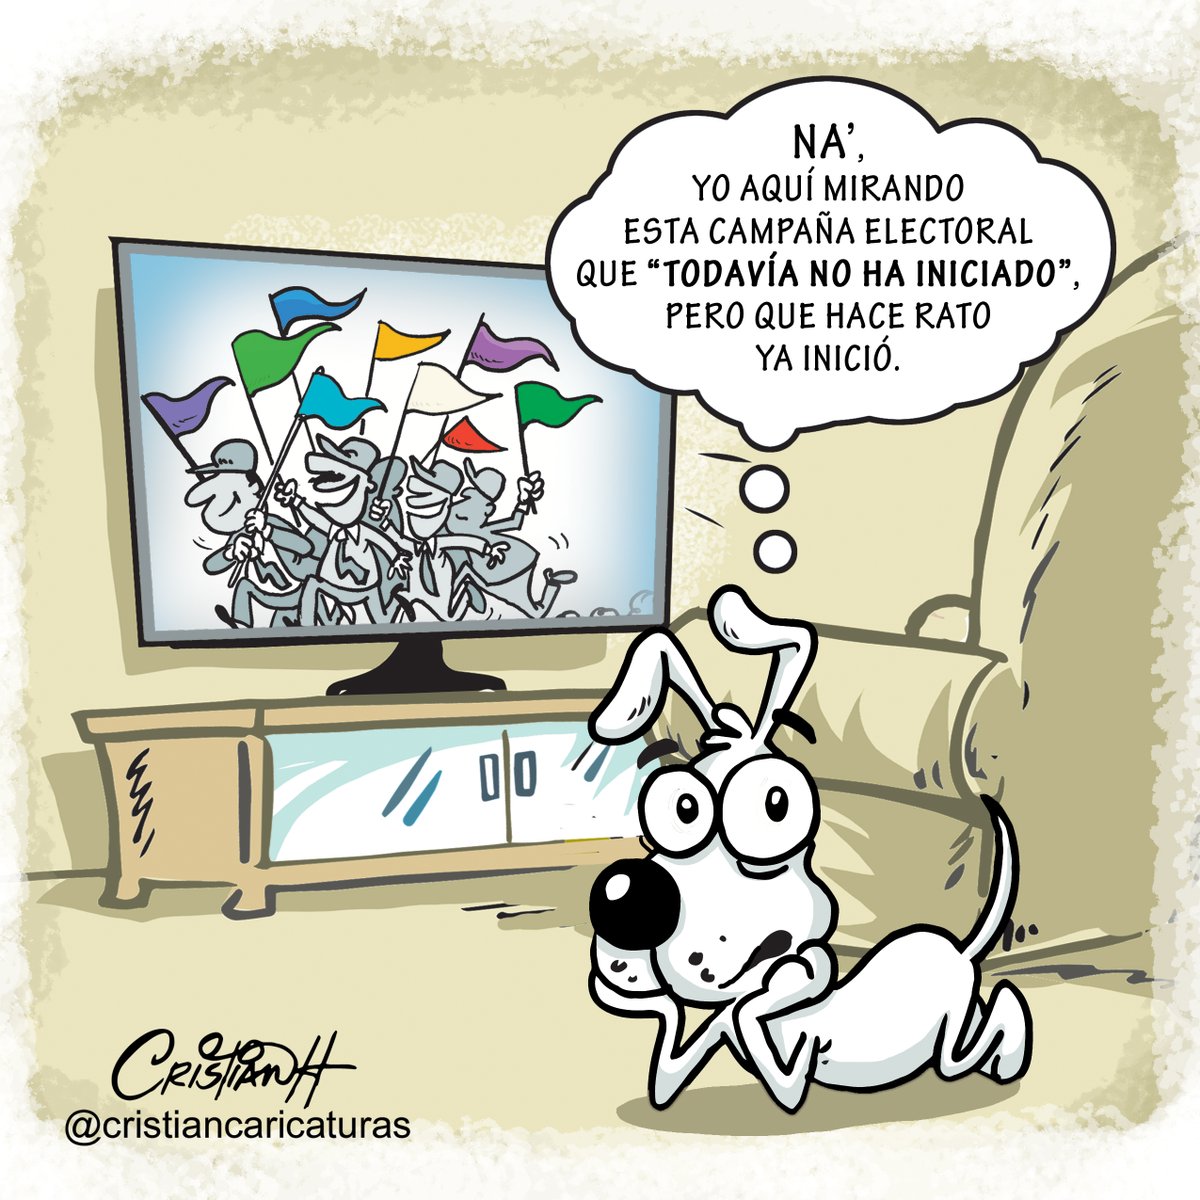 En julio inicia la campaña electoral🤣

Mi caricatura del #miercoles en el periódico @ElDia_do 
.
.
.
.
.
#campañapolitica #jce #elecciones #criscaricaturas #realengoycristian